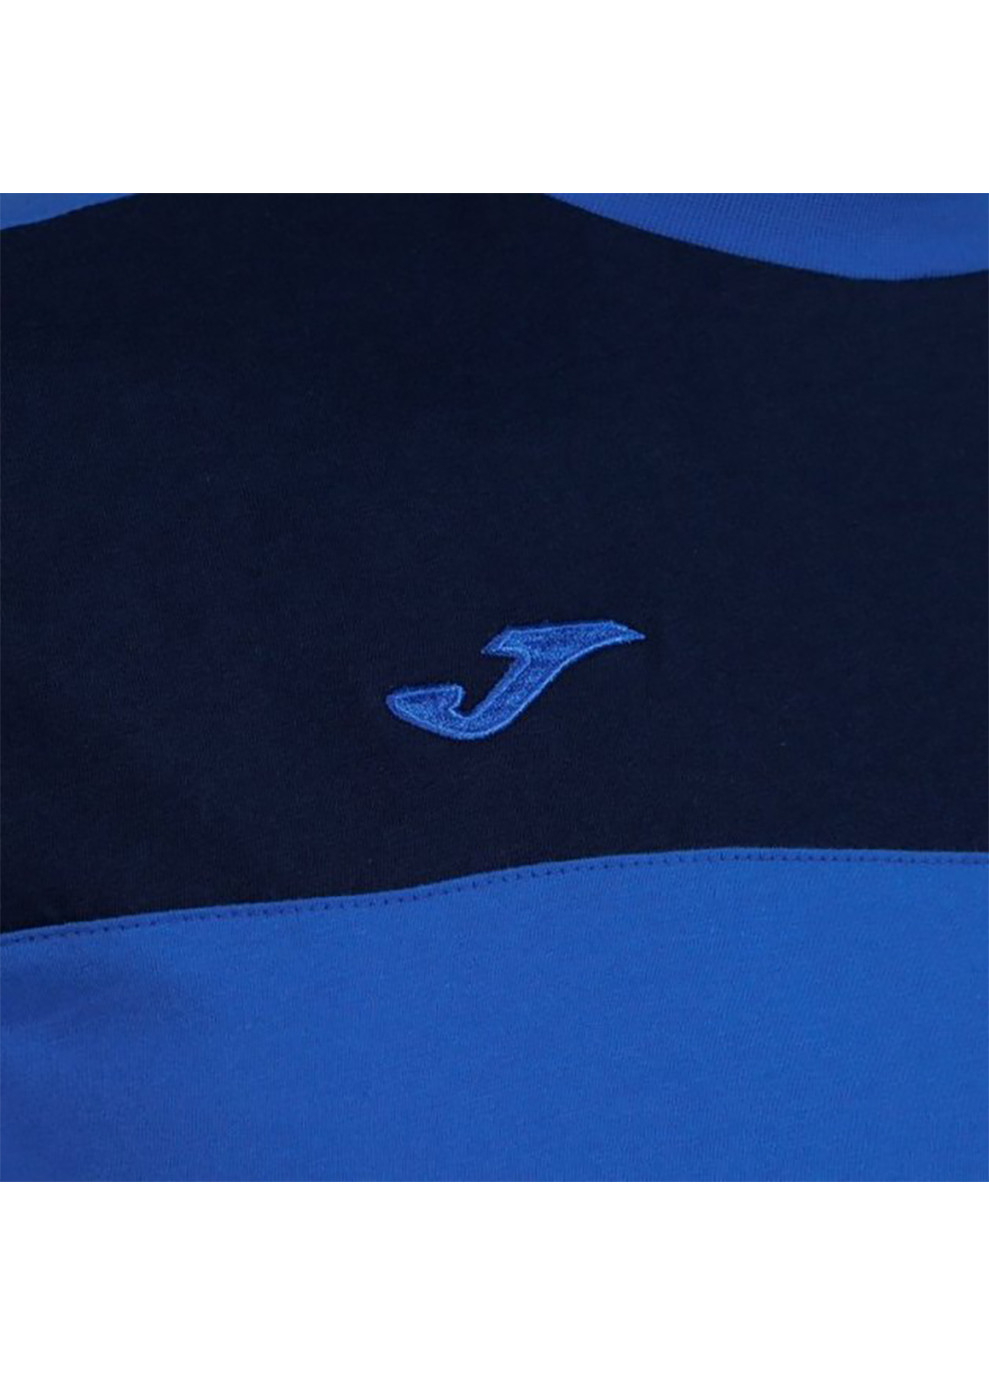 Комбінована чоловіча футболка crew v синій темно-синій Joma